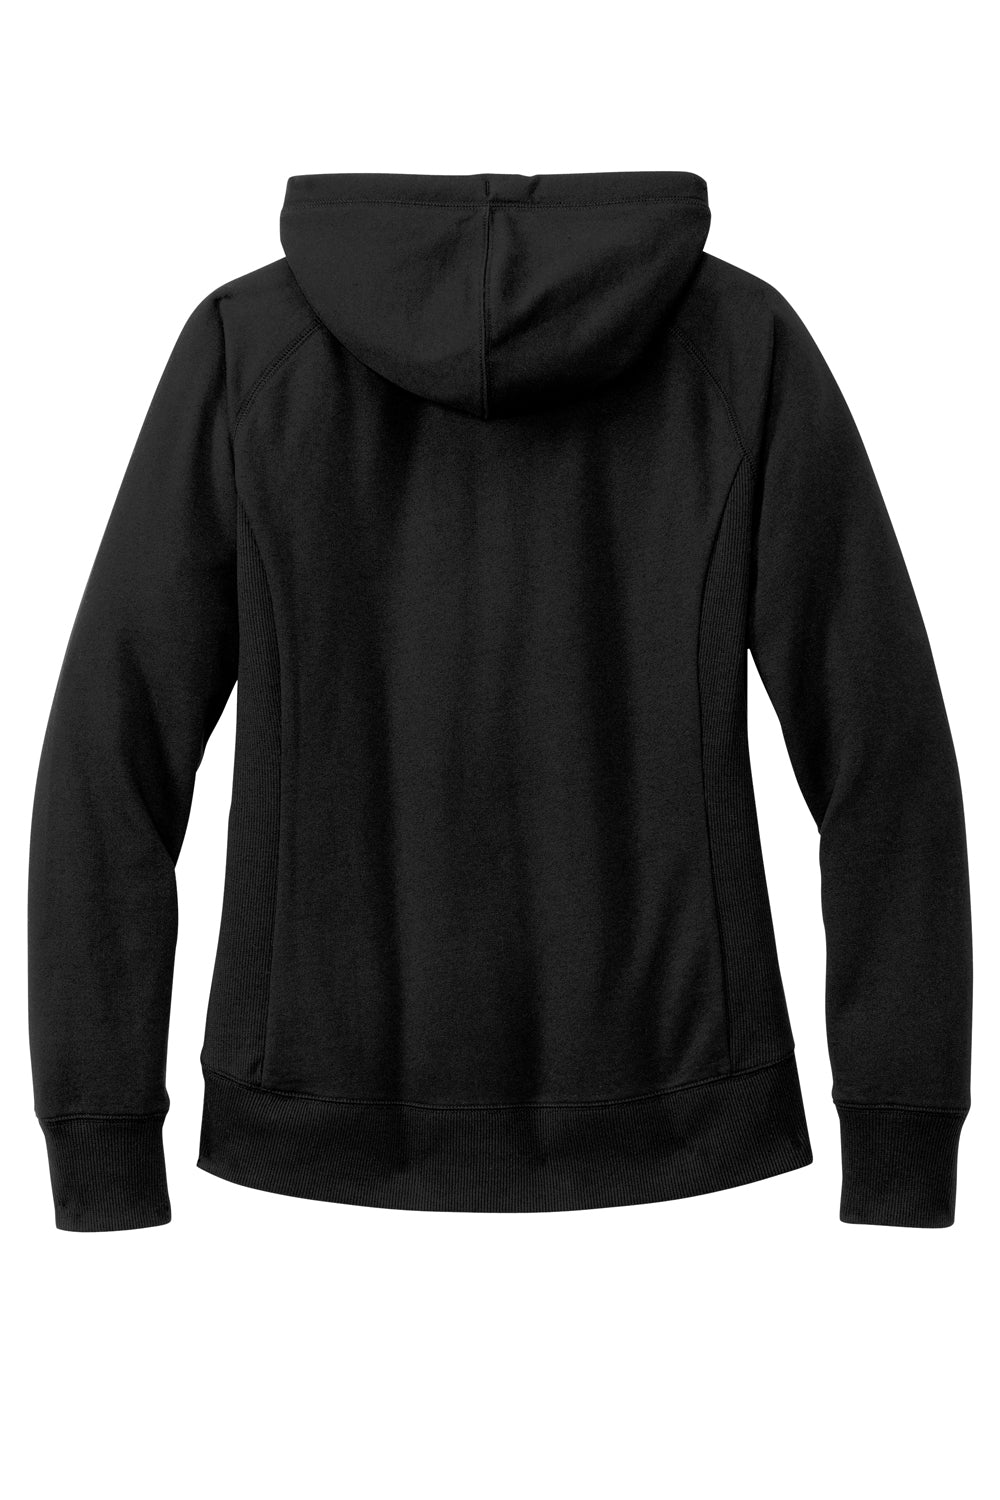 District DT8101 Womens Re-Fleece Hooded Sweatshirt Hoodie Black Flat Back